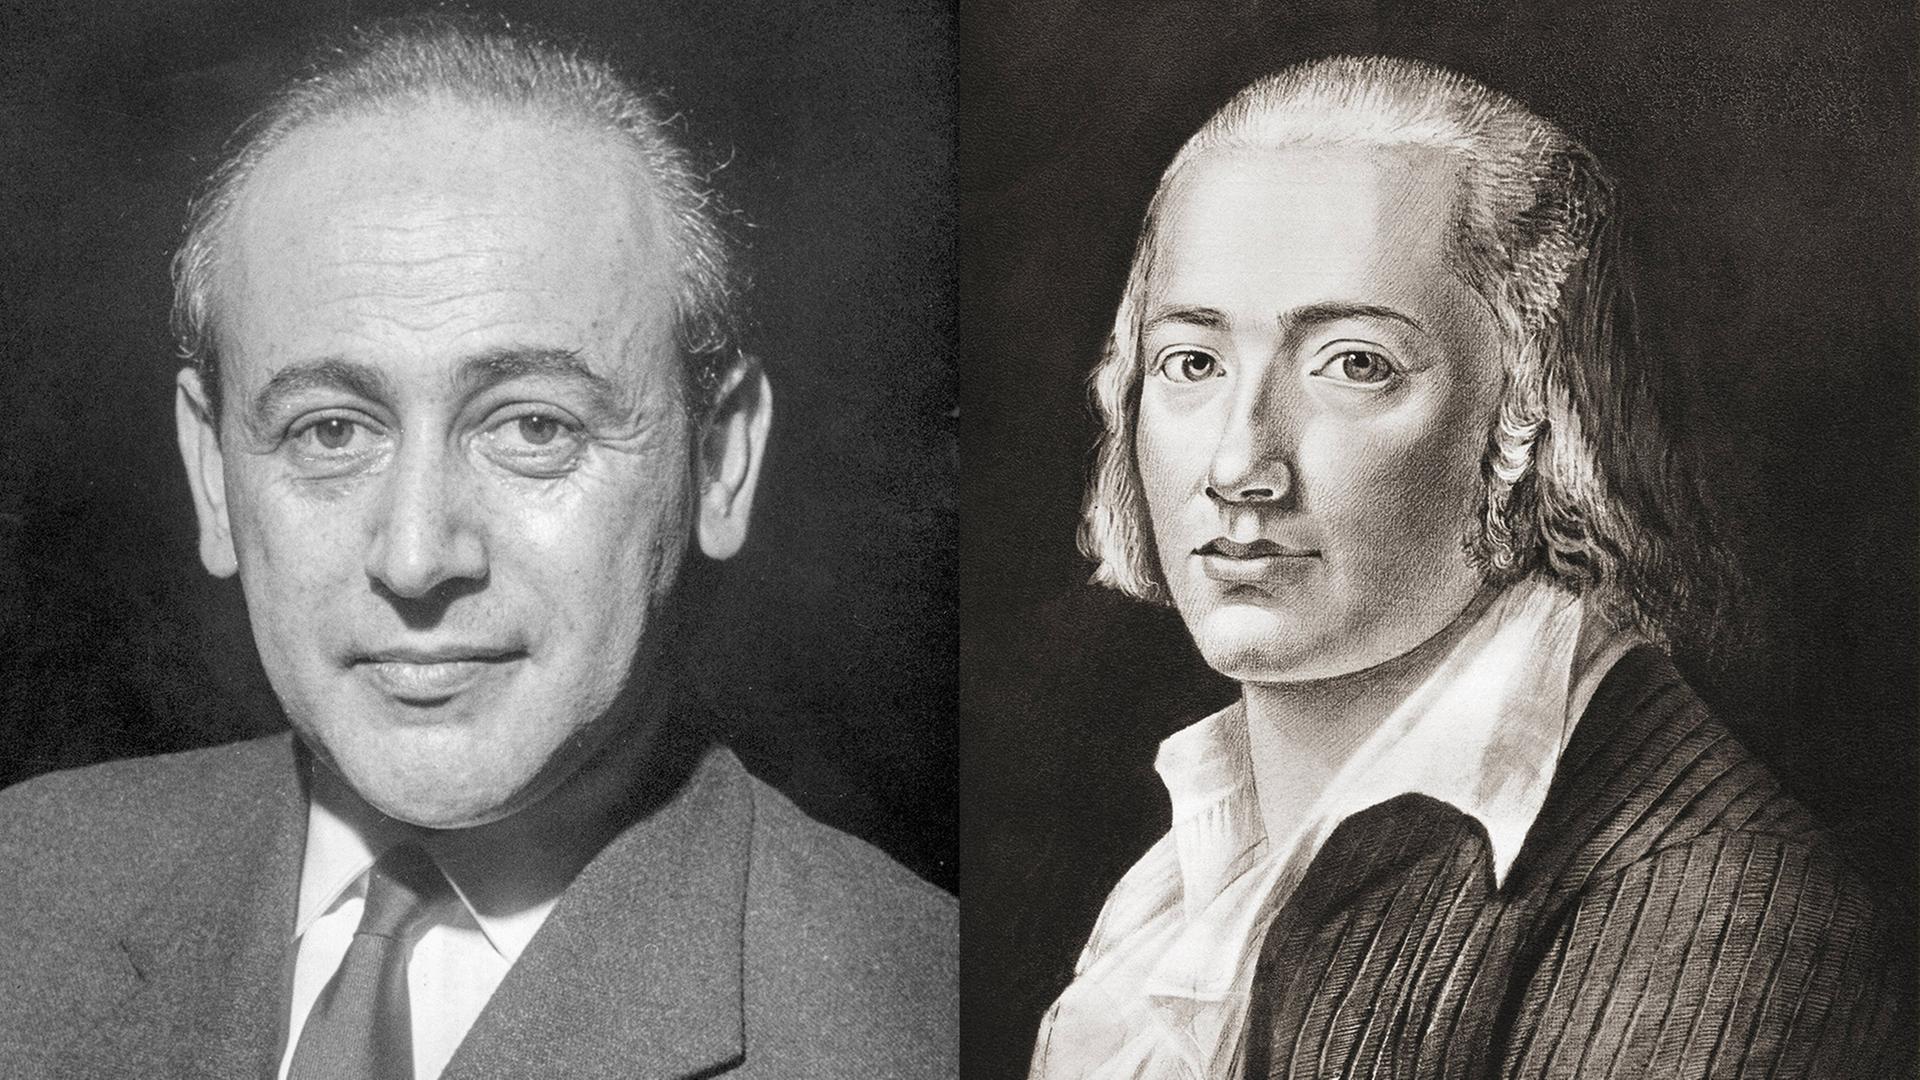 Porträt von Paul Celan links und Friedrich Hölderlin rechts.